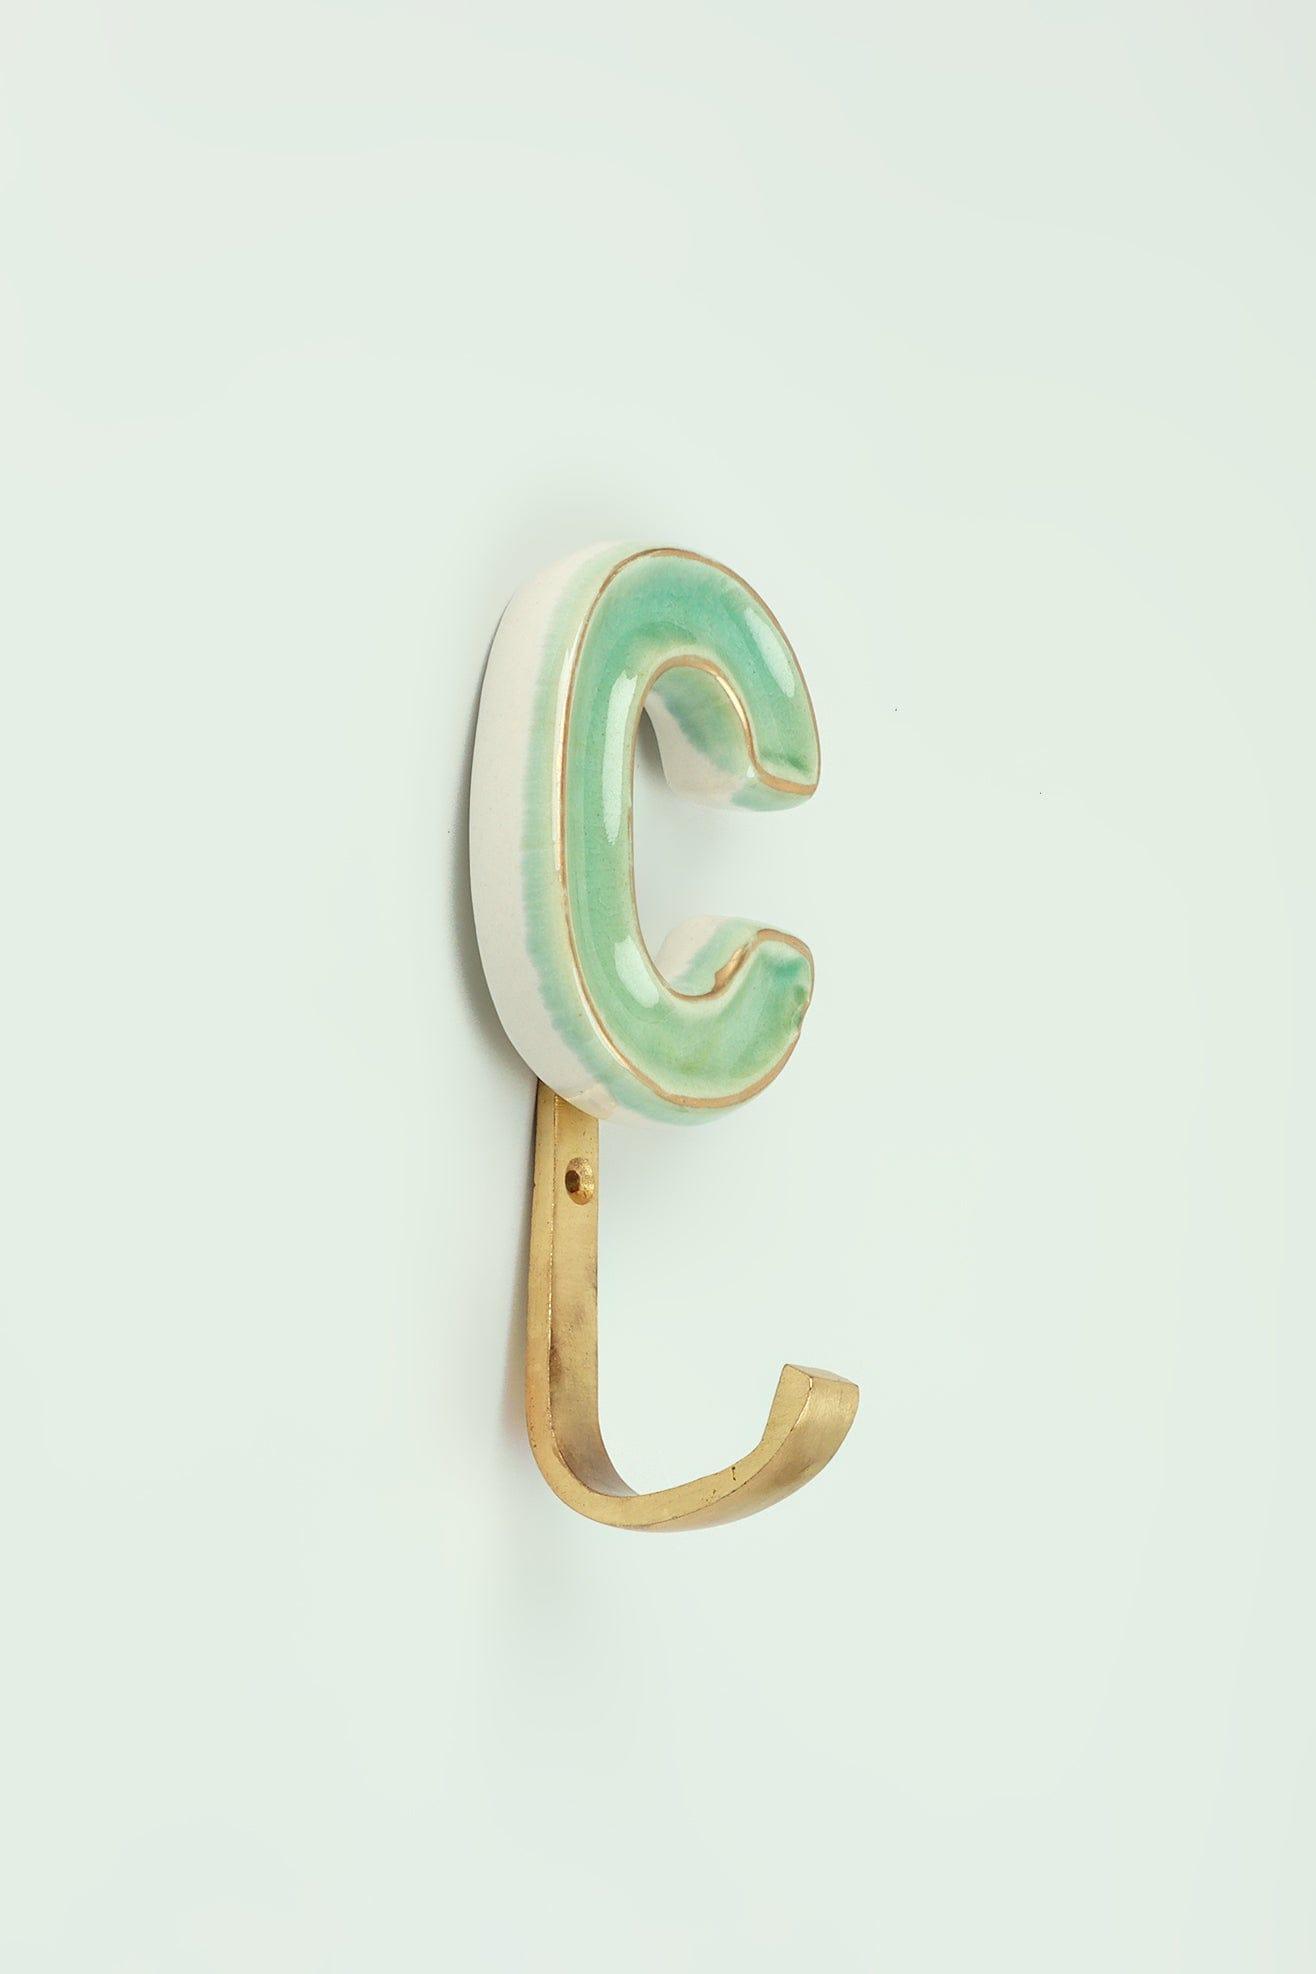 G Decor All Hooks Alphabet Green Crackle Glazed Hooks In Antique Brass